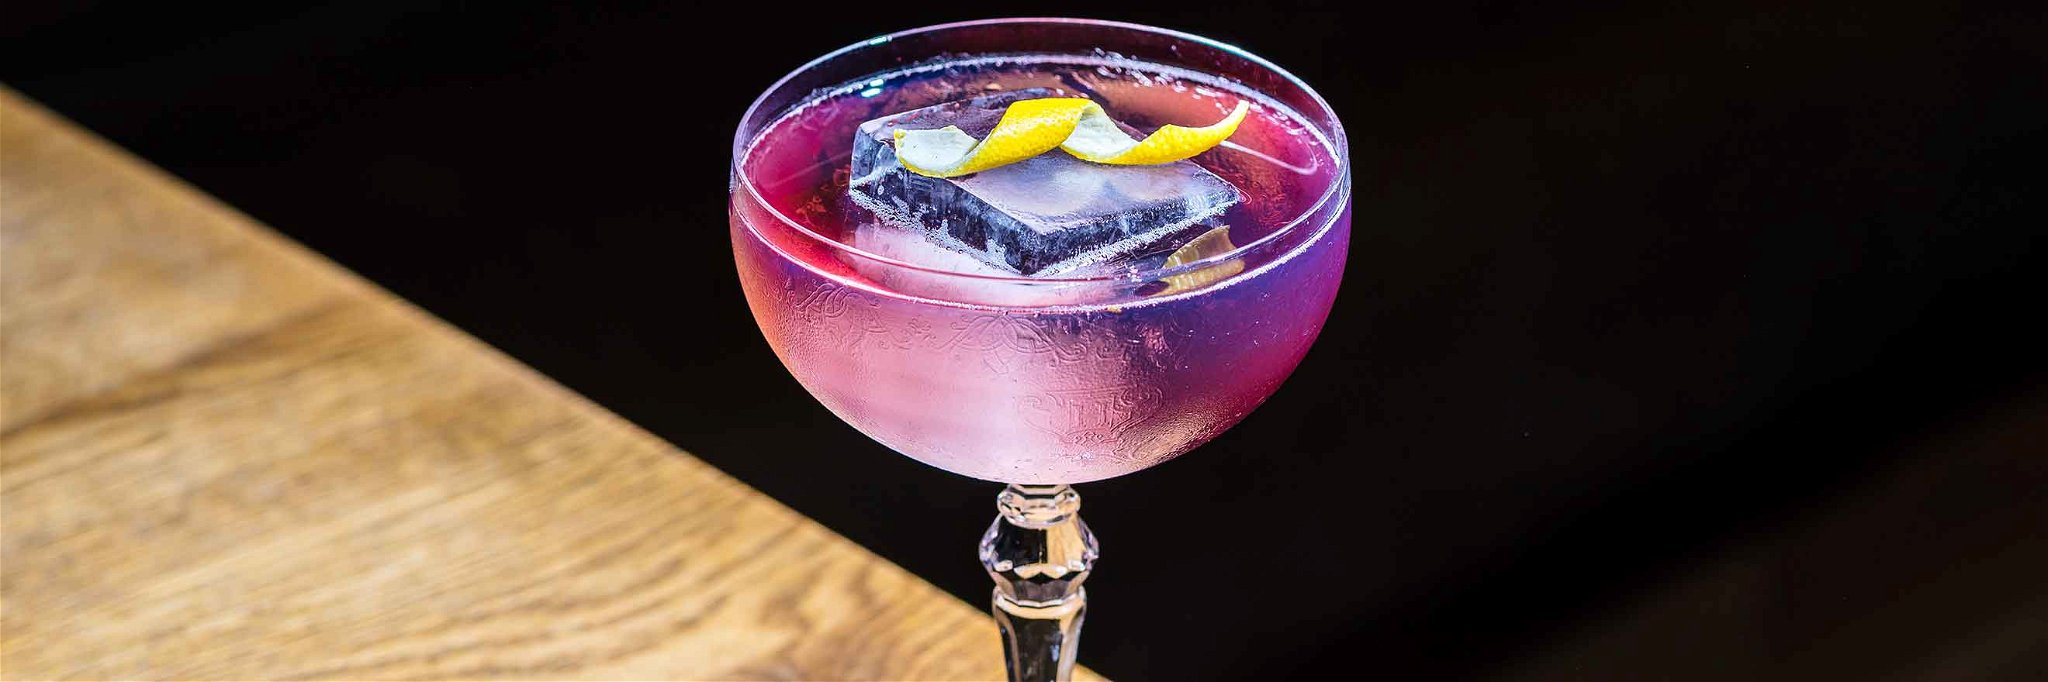 Der Cocktail «The sinners sin» wird mit Hendrick’s Orbium Gin zubereitet, der nur in ausgewählten Bars serviert wird.